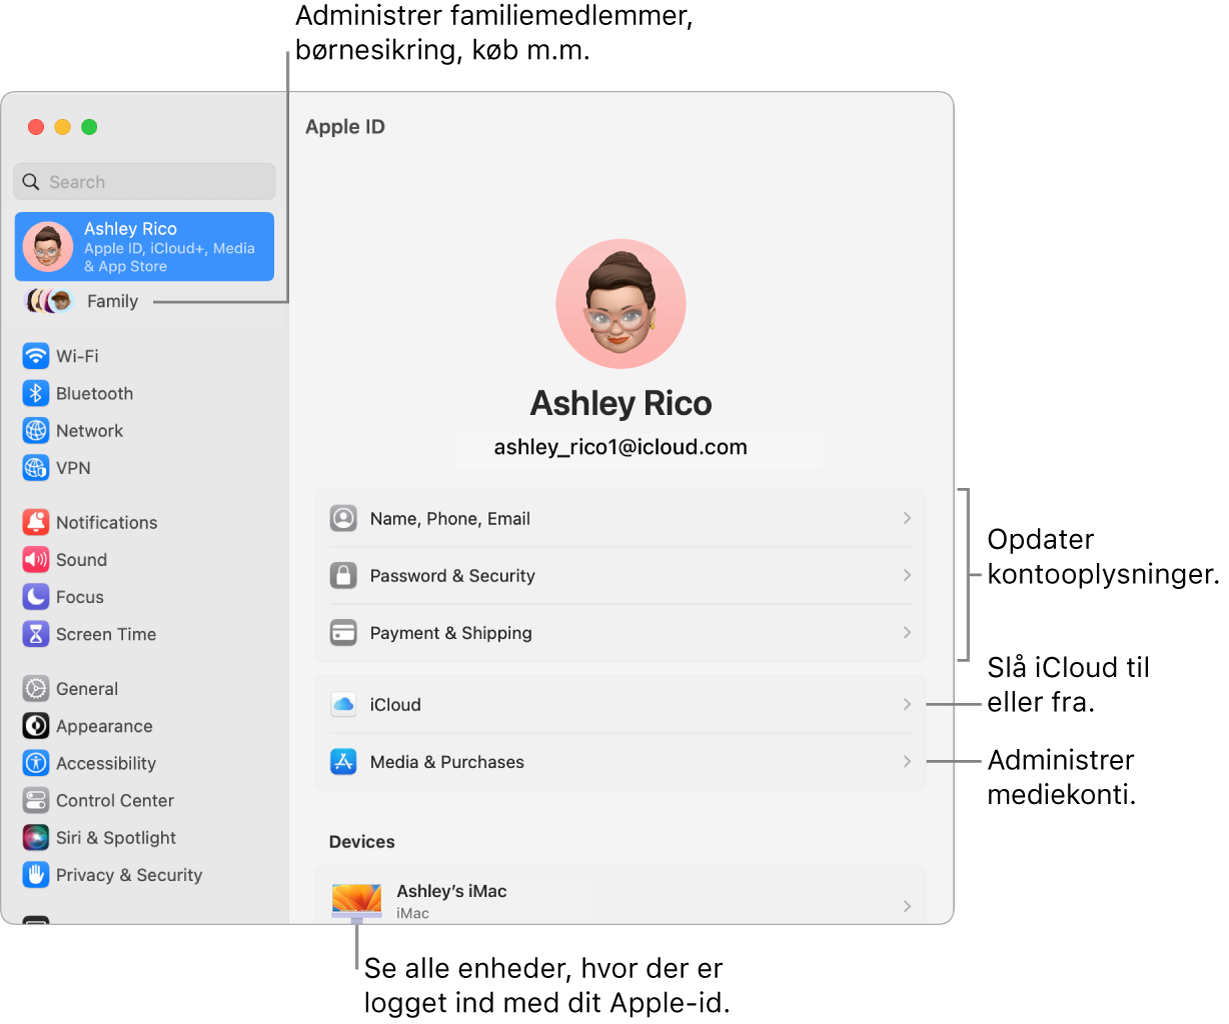 Indstillingerne til Apple-id i Systemindstillinger med billedforklaringer til at opdatere kontooplysninger, slå iCloud--funktioner til og fra, administrere mediekonti samt Familie, hvor du kan administrere familiemedlemmer, børnesikring m.m.